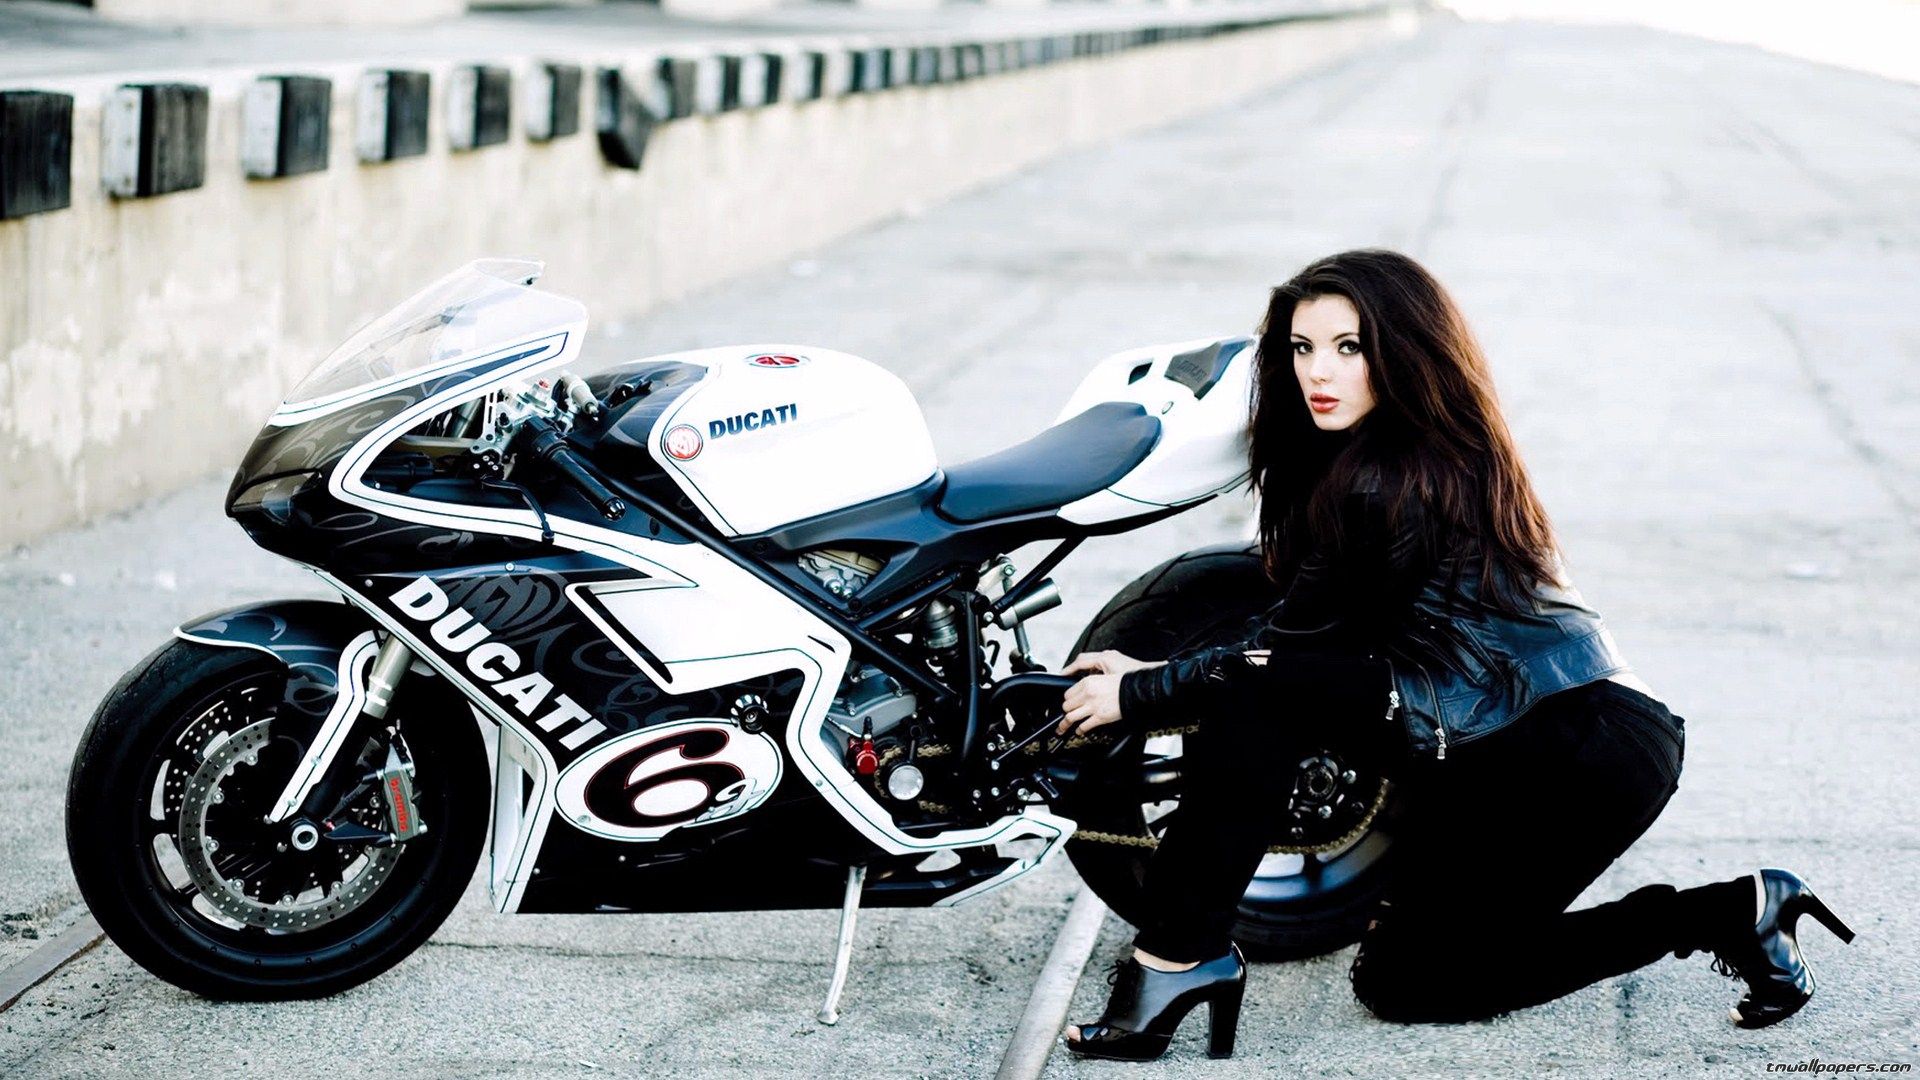 Motorcycle Girls Wallpaper